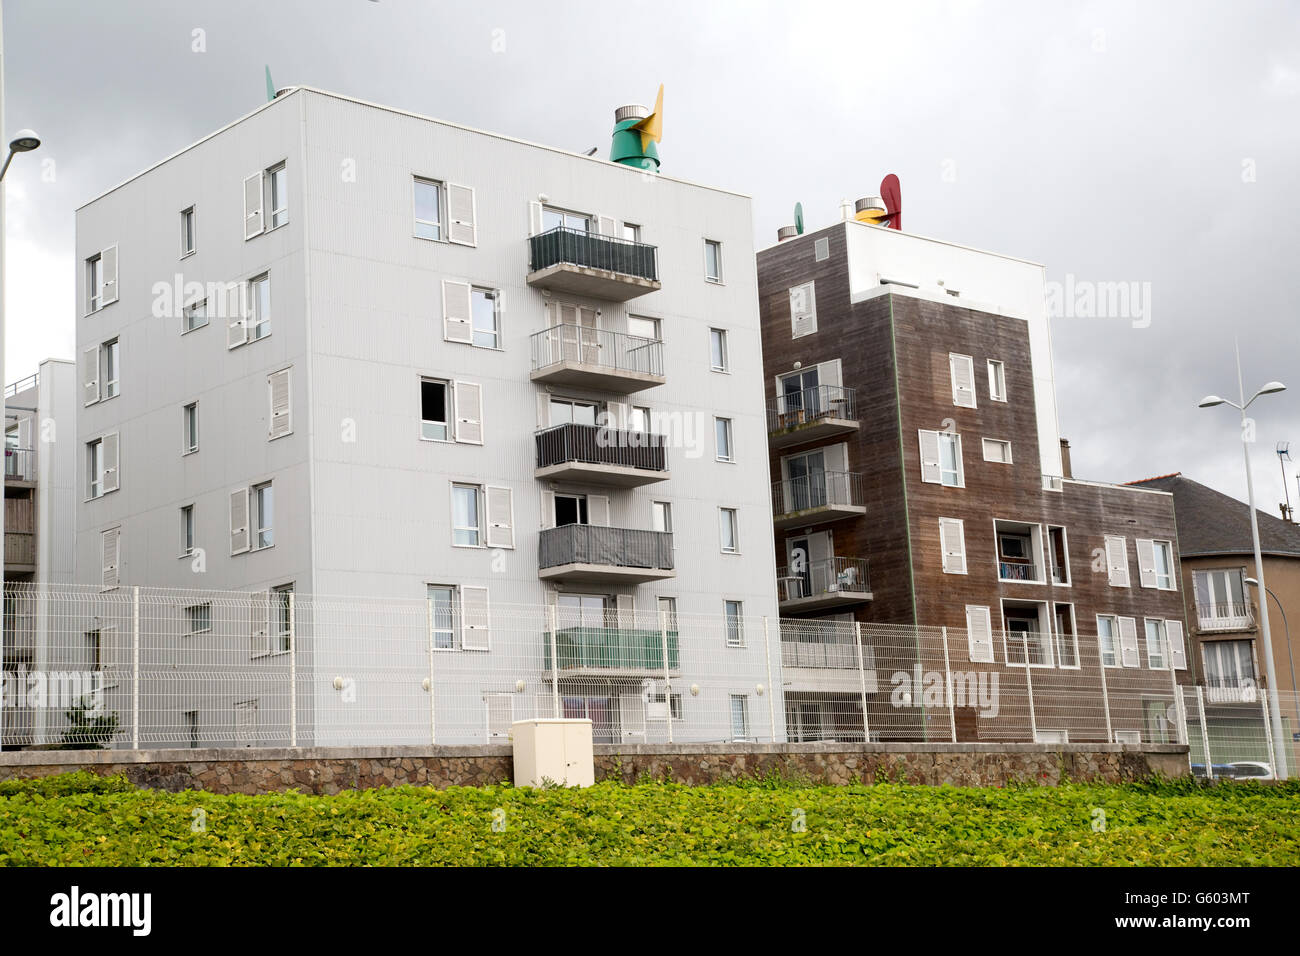 Vento assistita ventilazione naturale sistemi per la fornitura di energia zero raffreddamento su tetto di appartamenti Francia Foto Stock